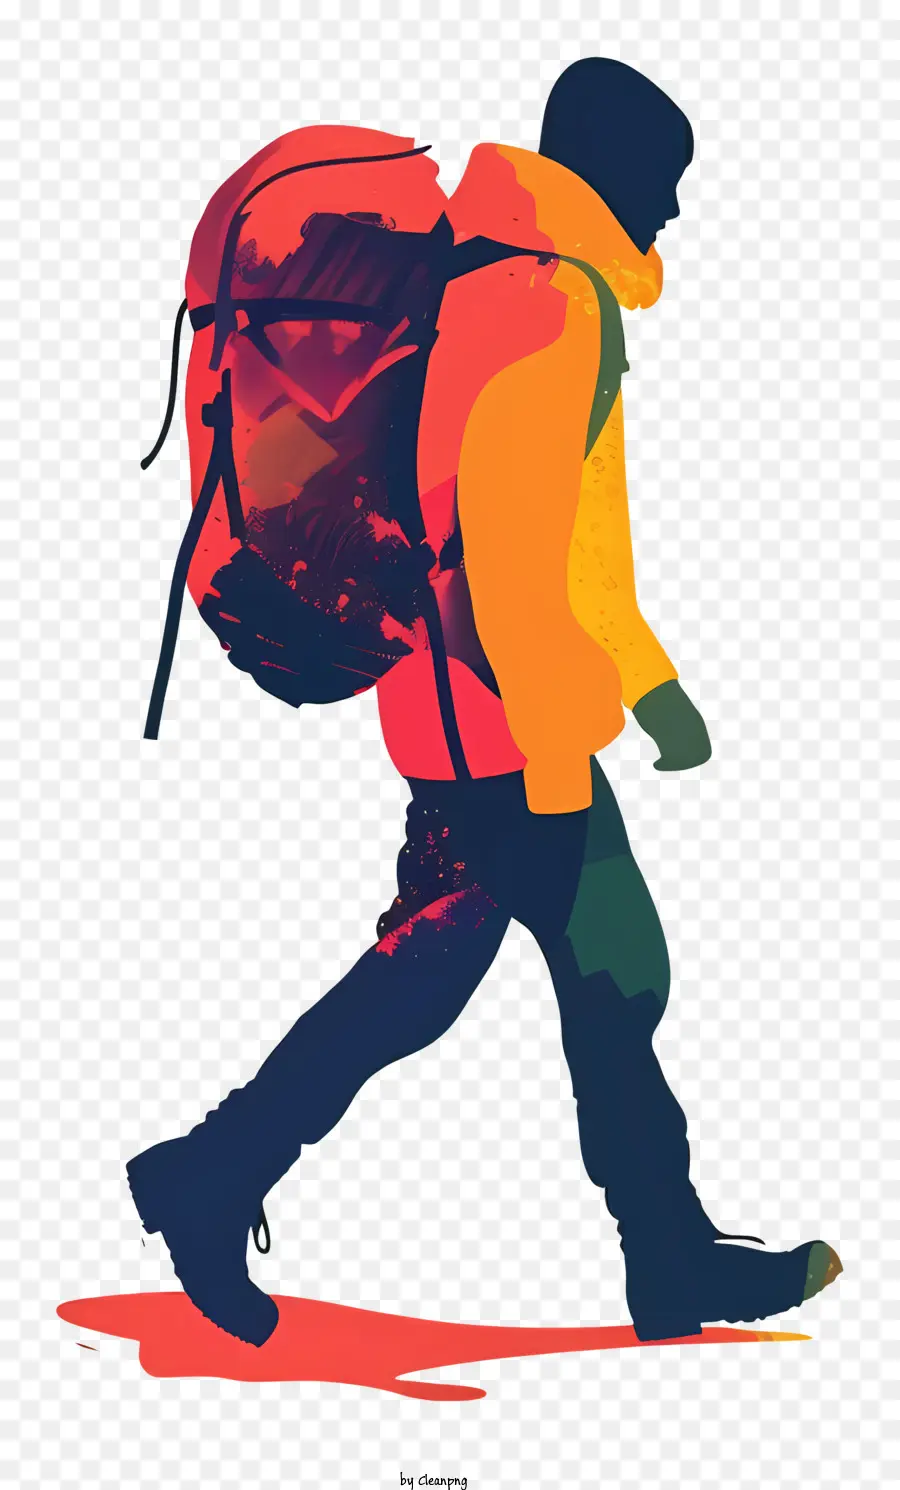 zaino da viaggio - Uomo con zaino che cammina verso gli spettatori, rendering dettagliato e promozione di attrezzatura da trekking